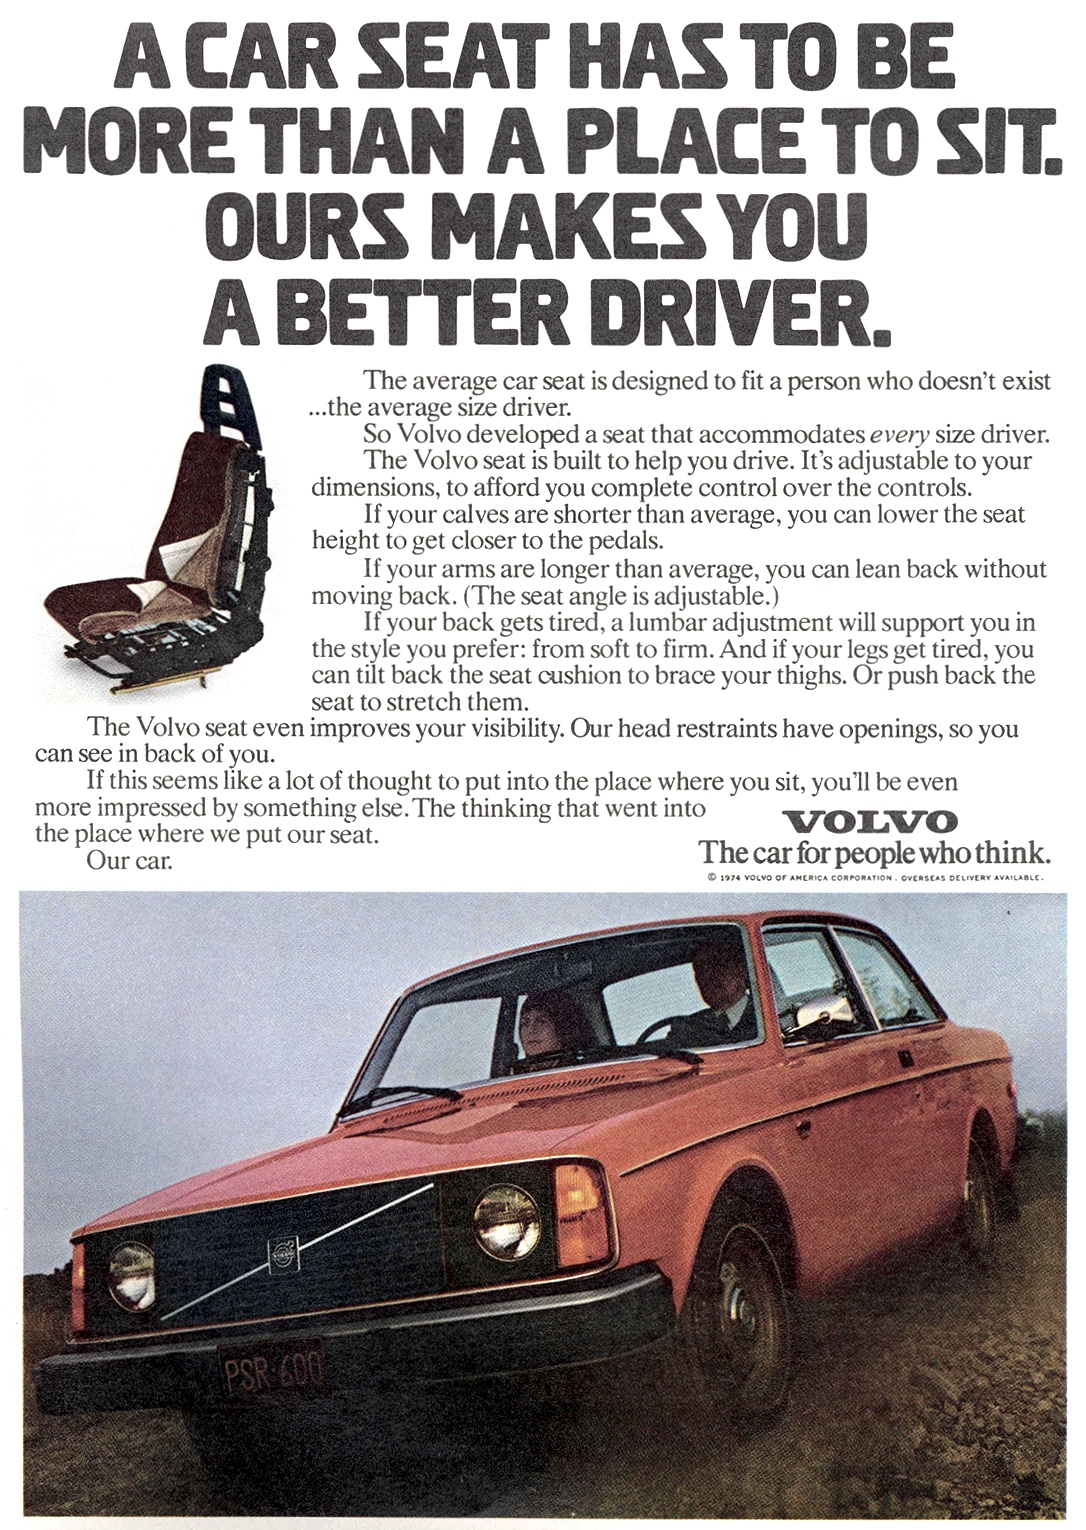 1975 Volvo Auto Advertising